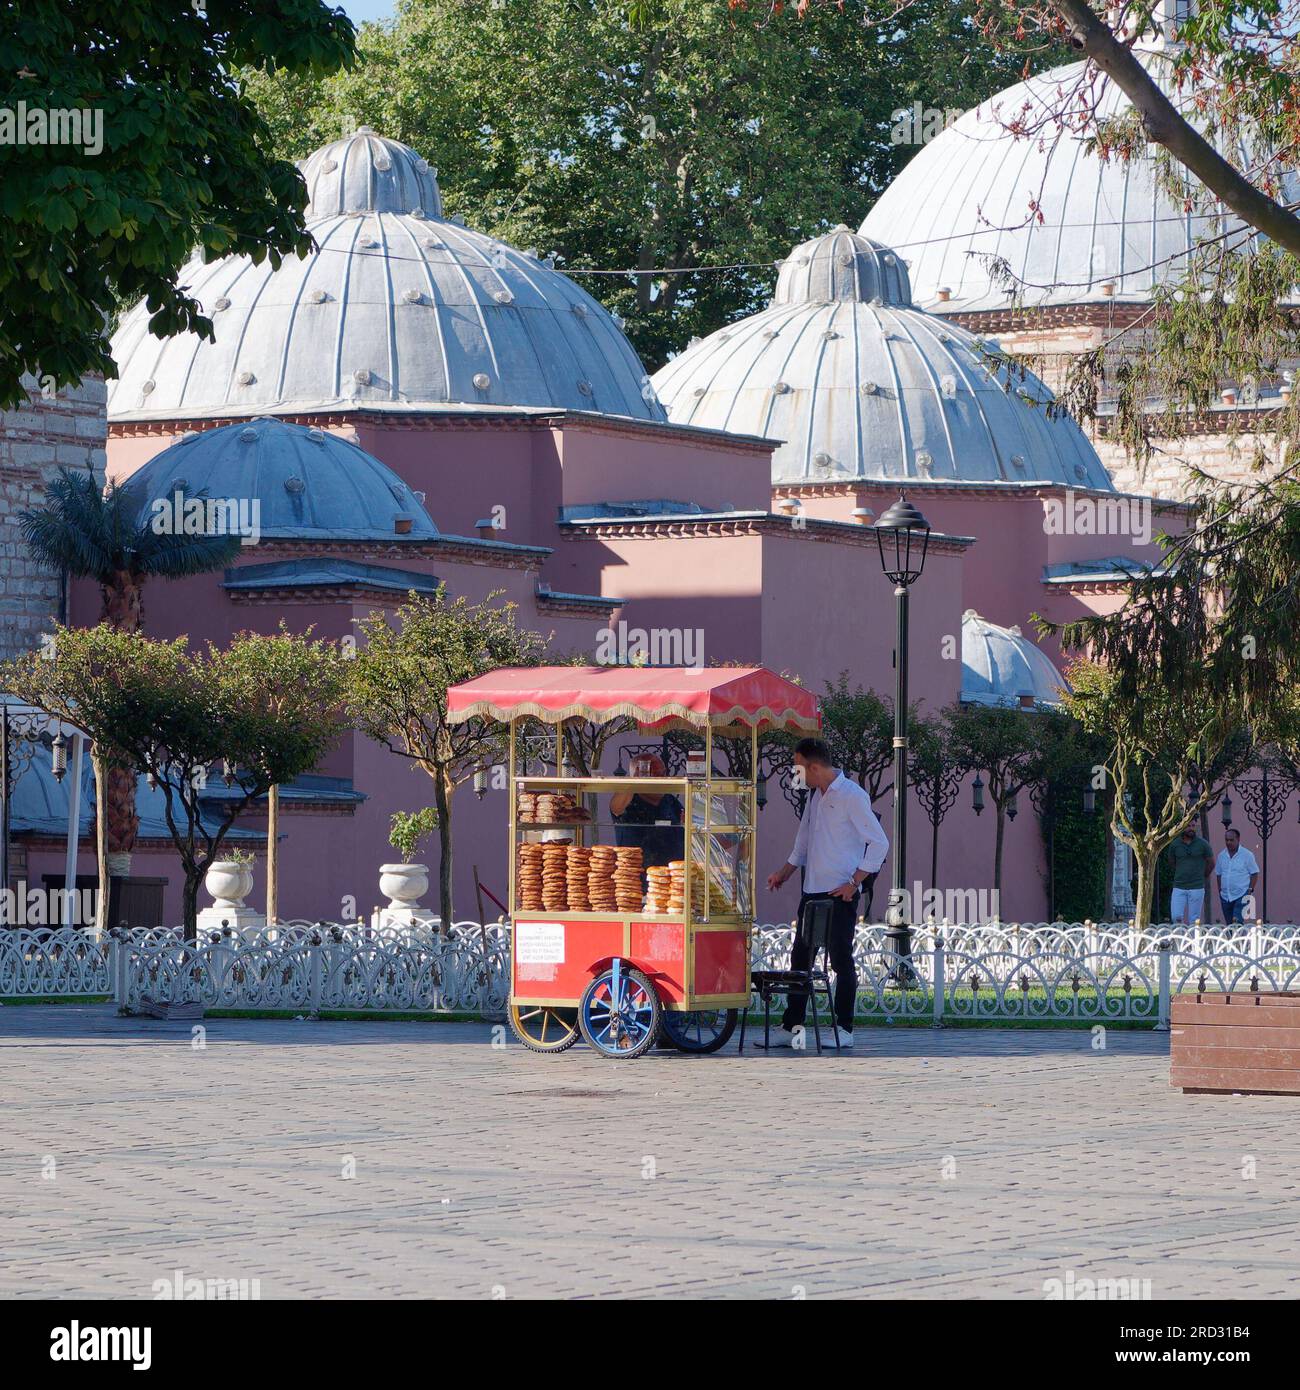 Hurrem Sultan hammam bain turc Maison dans le parc Sultanahmet à Istanbul, Turquie, avec un chariot rouge vendant des Simits aka bagels turcs. Banque D'Images